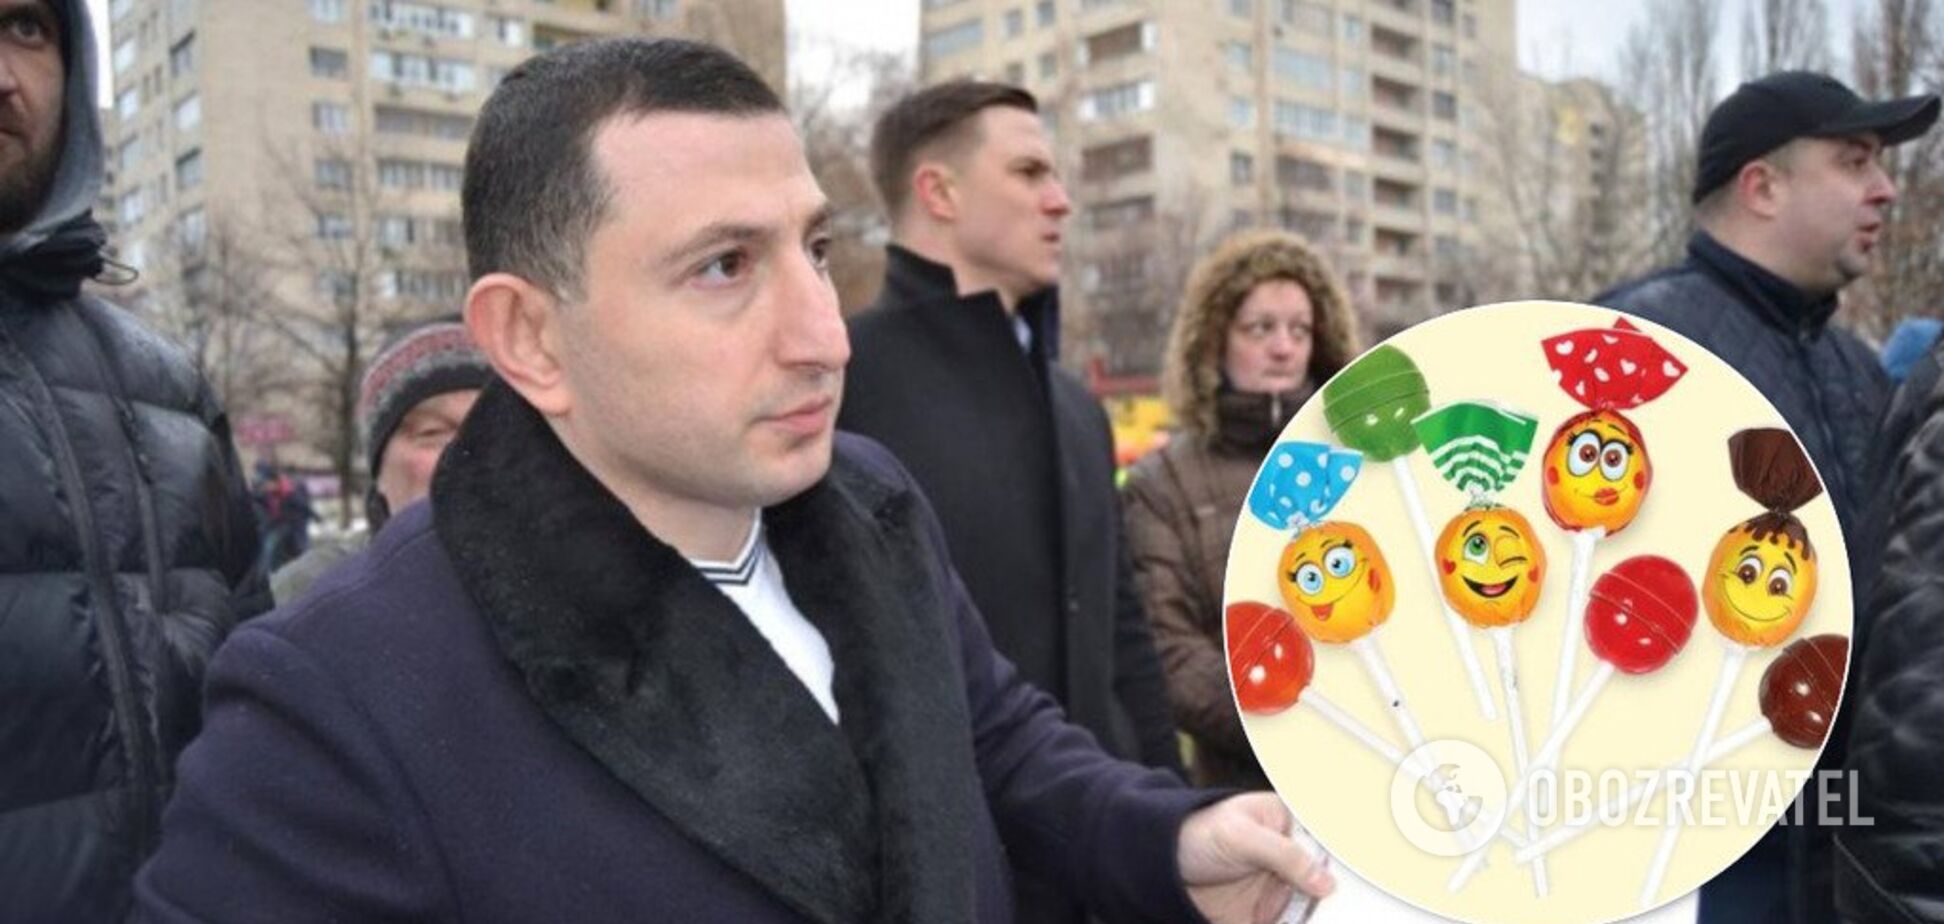 Цукерки за паспортом: у Києві депутат попався на 'підкупі' батьків школярів